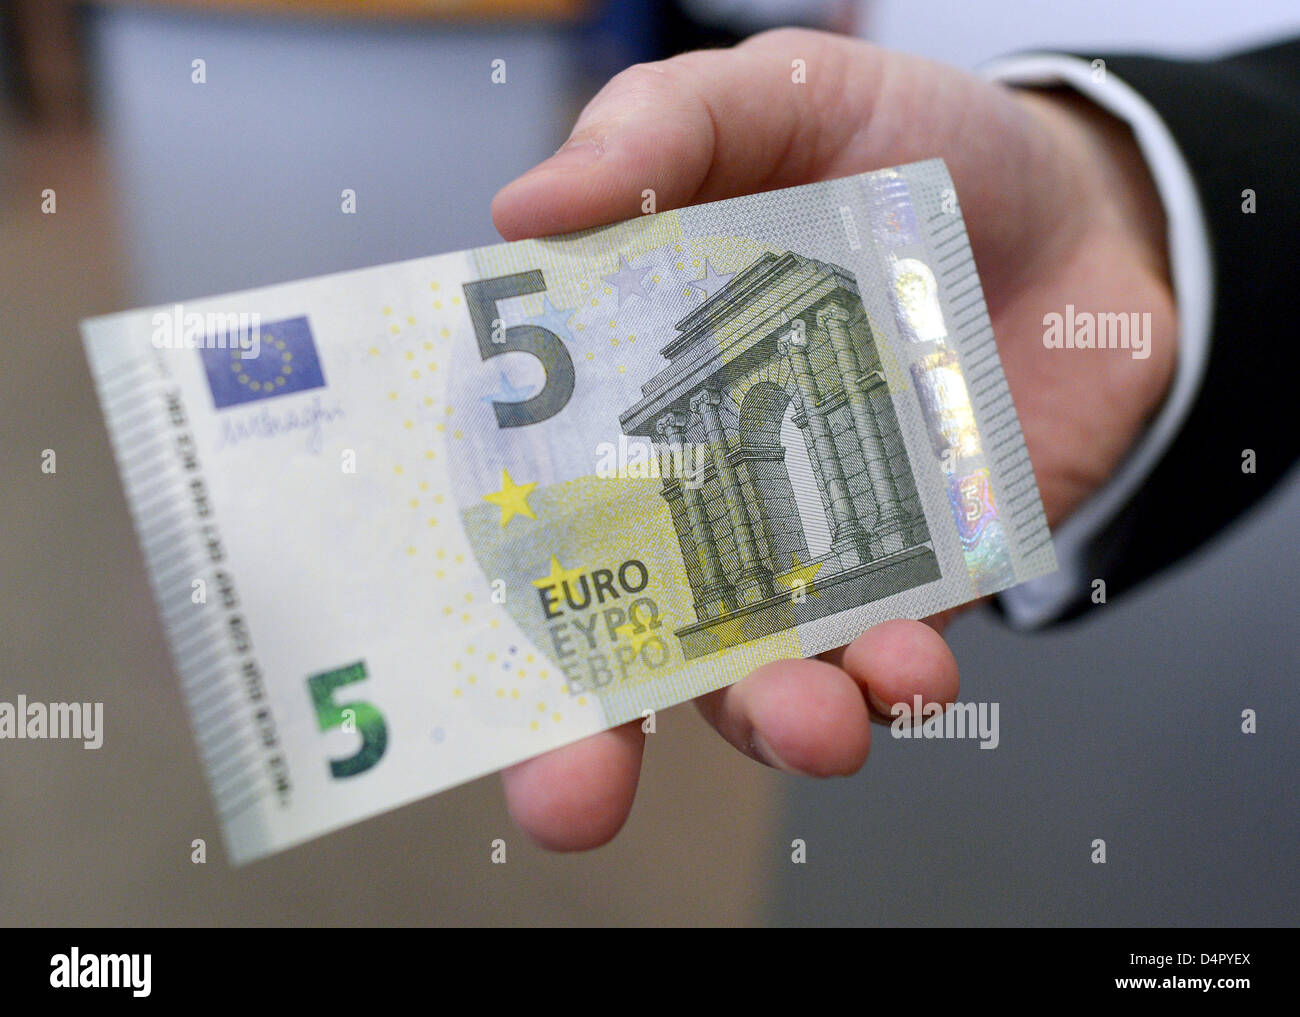 Купюра 5 евро. 5 Евро купюра. 5 Евро банкноты евро. Купюра 5 евро новая. 5 Евро фото.